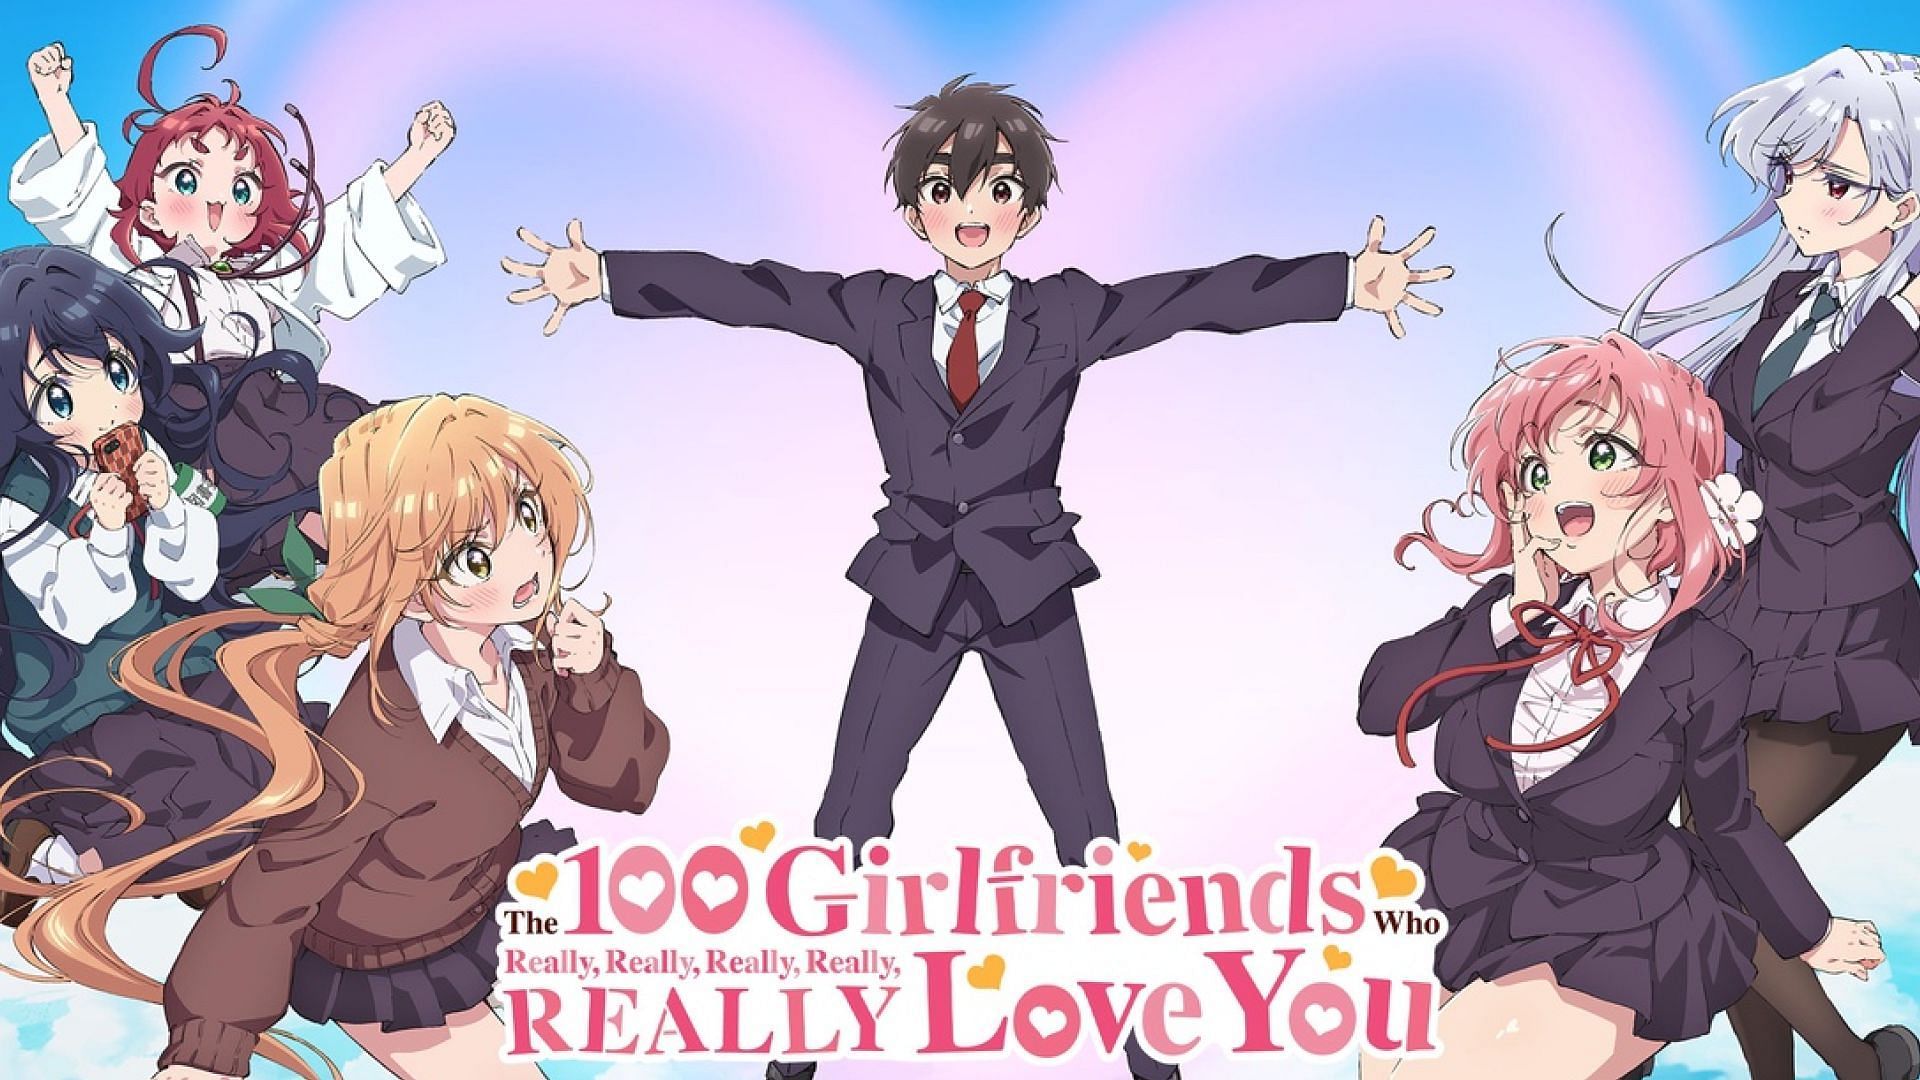 10 JRPG's That Got Their Own Anime Series